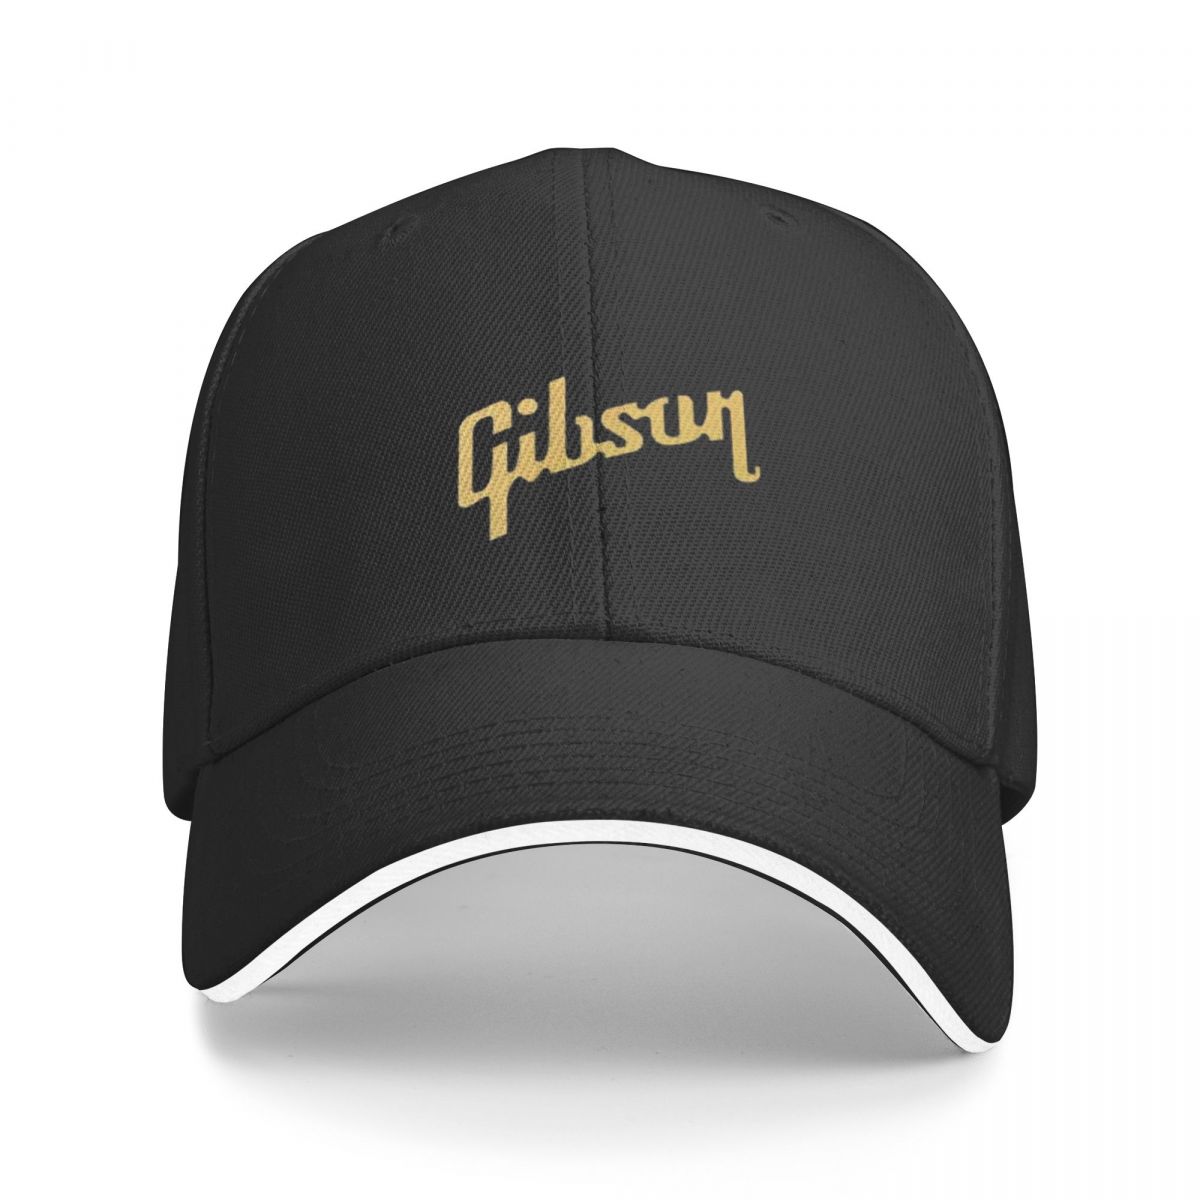 GIBSON 골드 야구 모자, 비치 후드 모자, 남녀공용, 신상